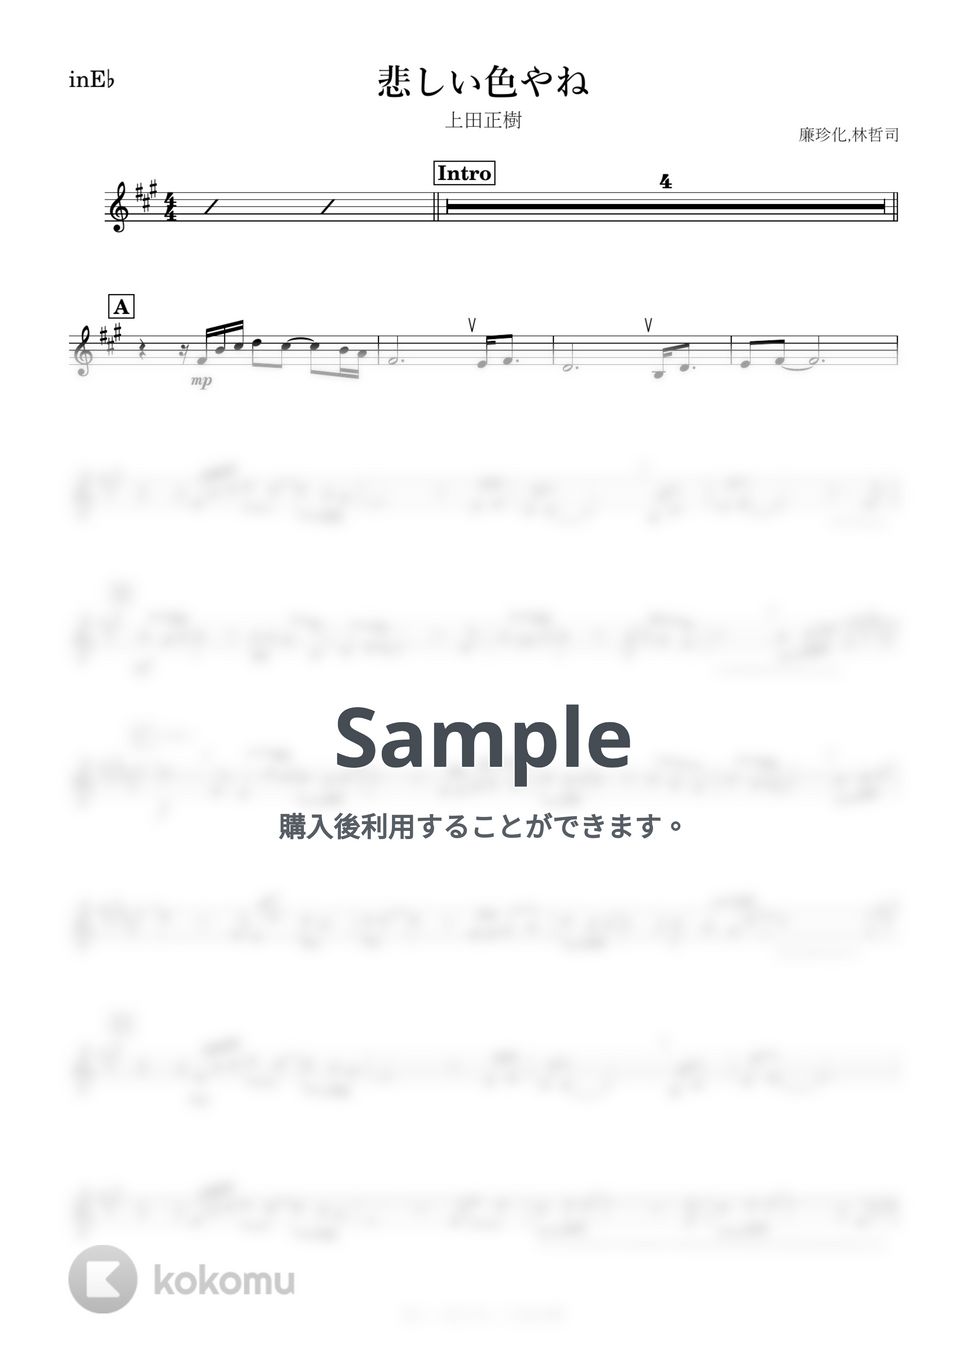 上田正樹 - 悲しい色やね (E♭) by kanamusic